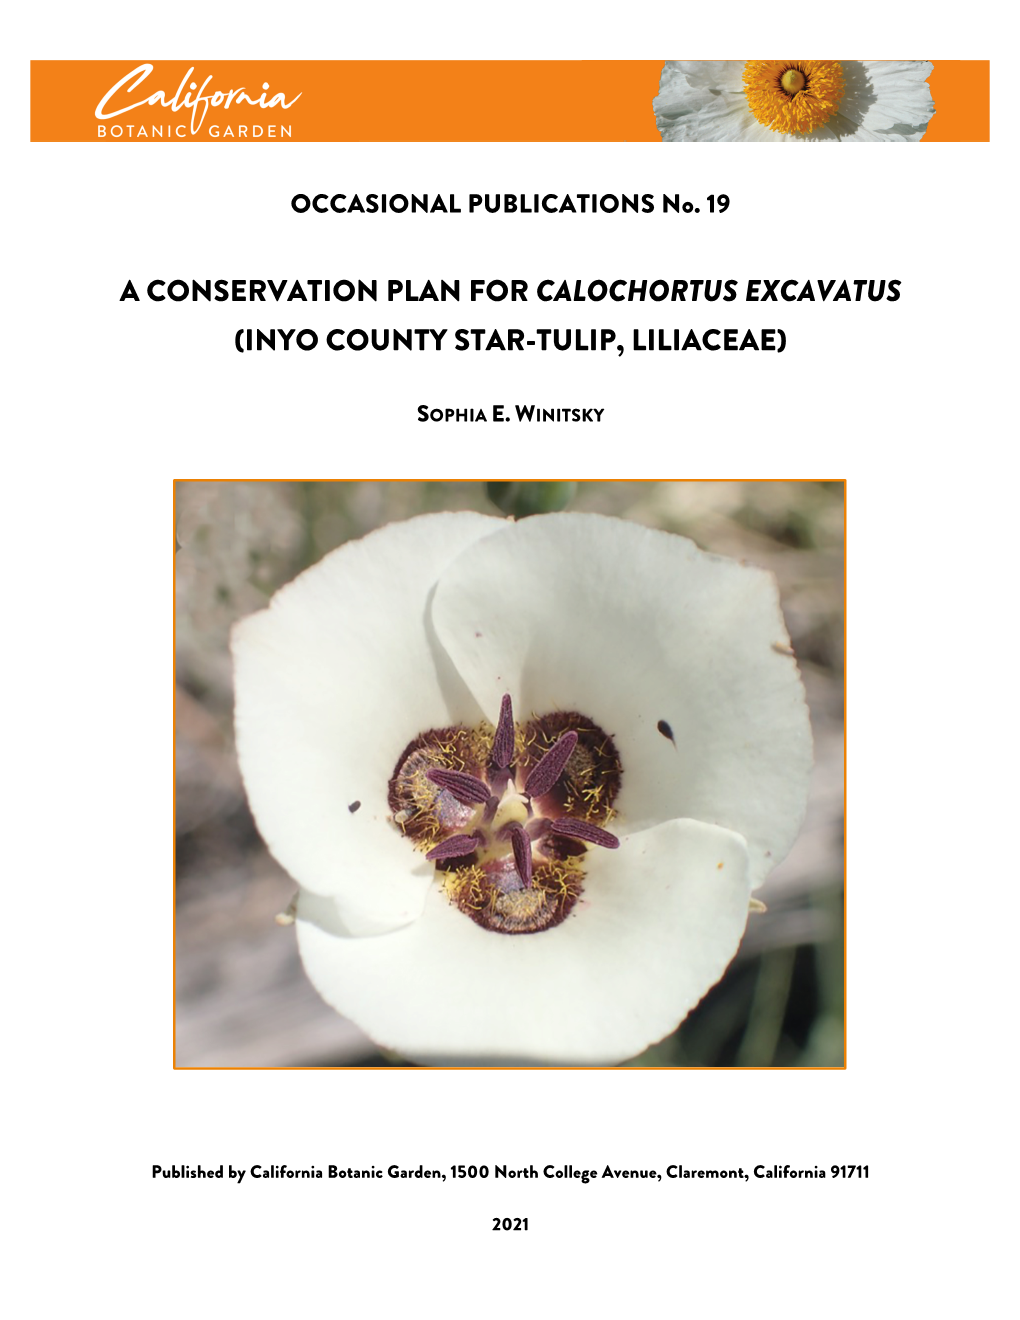 Calochortus Excavatus (Inyo County Star-Tulip, Liliaceae)